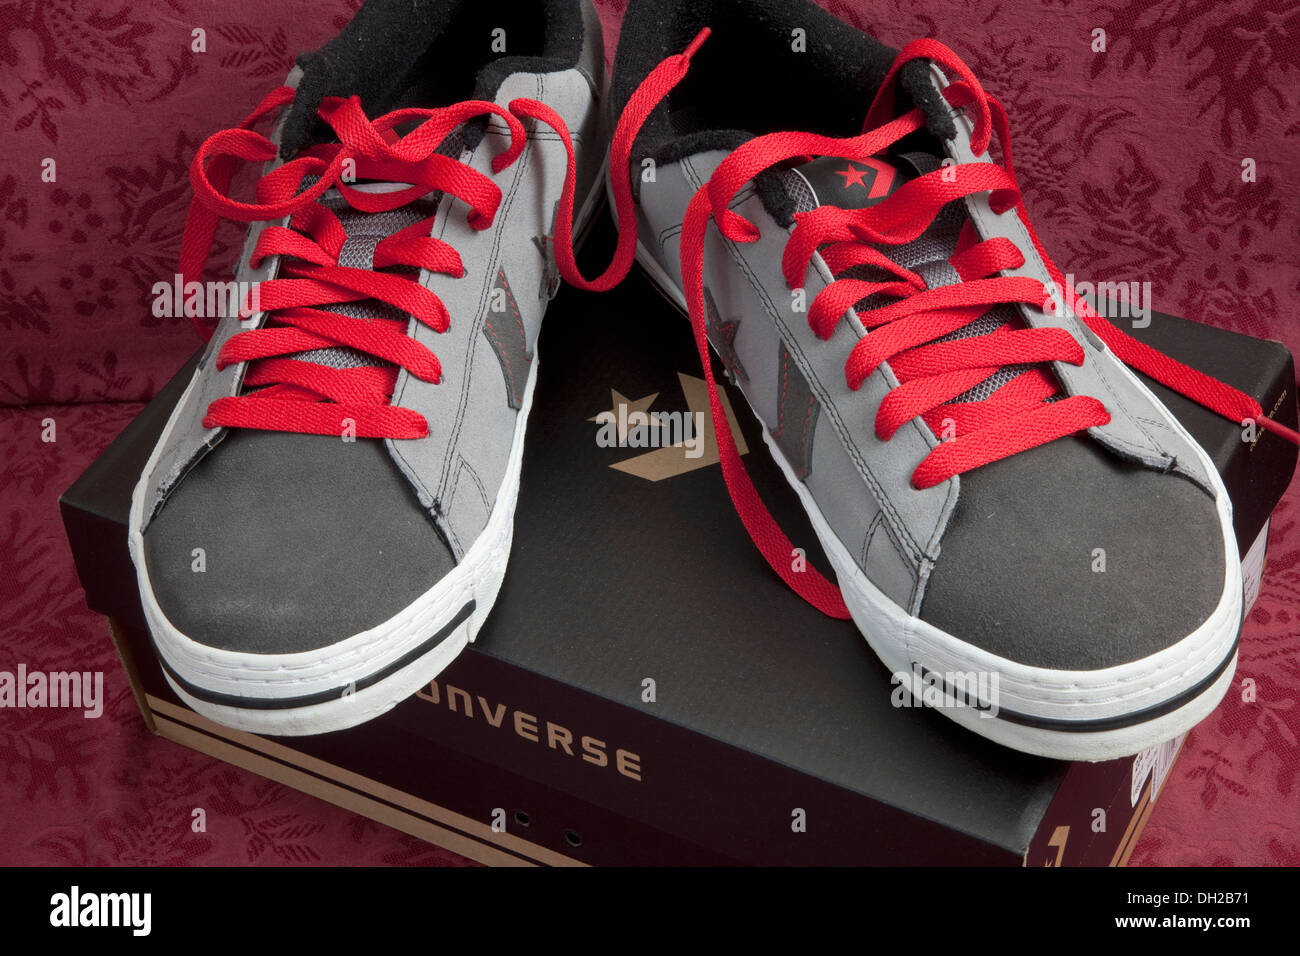 Photographes Converse All Star chaussures avec lacets rouges sur boîte d'origine. St Paul Minnesota MN USA Banque D'Images